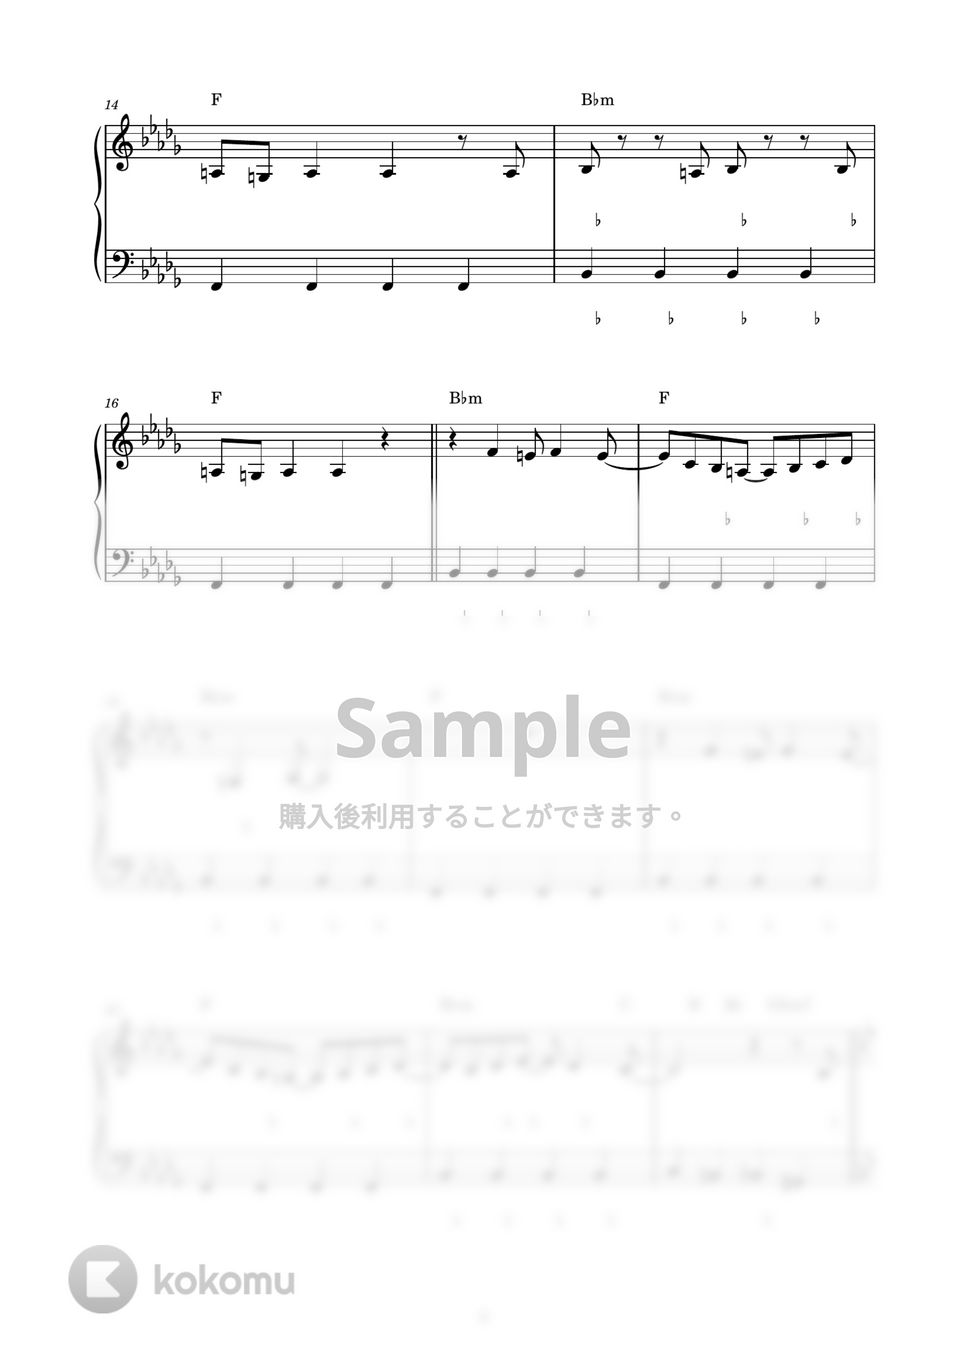 米津玄師 - KICK BACK (ピアノ楽譜 / かんたん両手 / 歌詞付き / ドレミ付き / 初心者向き) by piano.tokyo